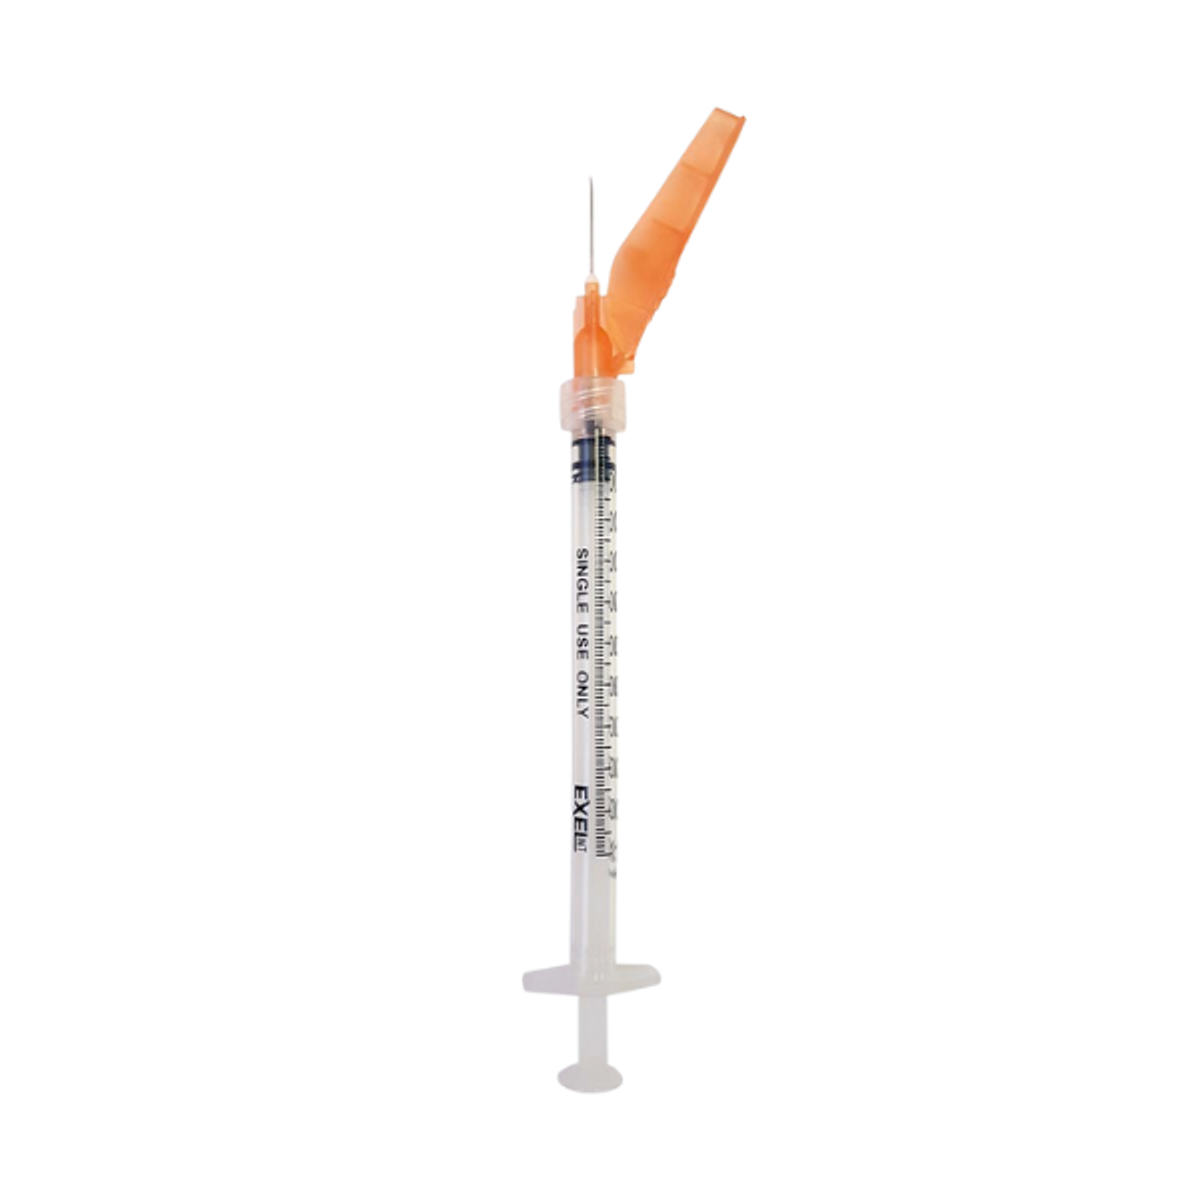 Exel Securetouch Safety Syringes